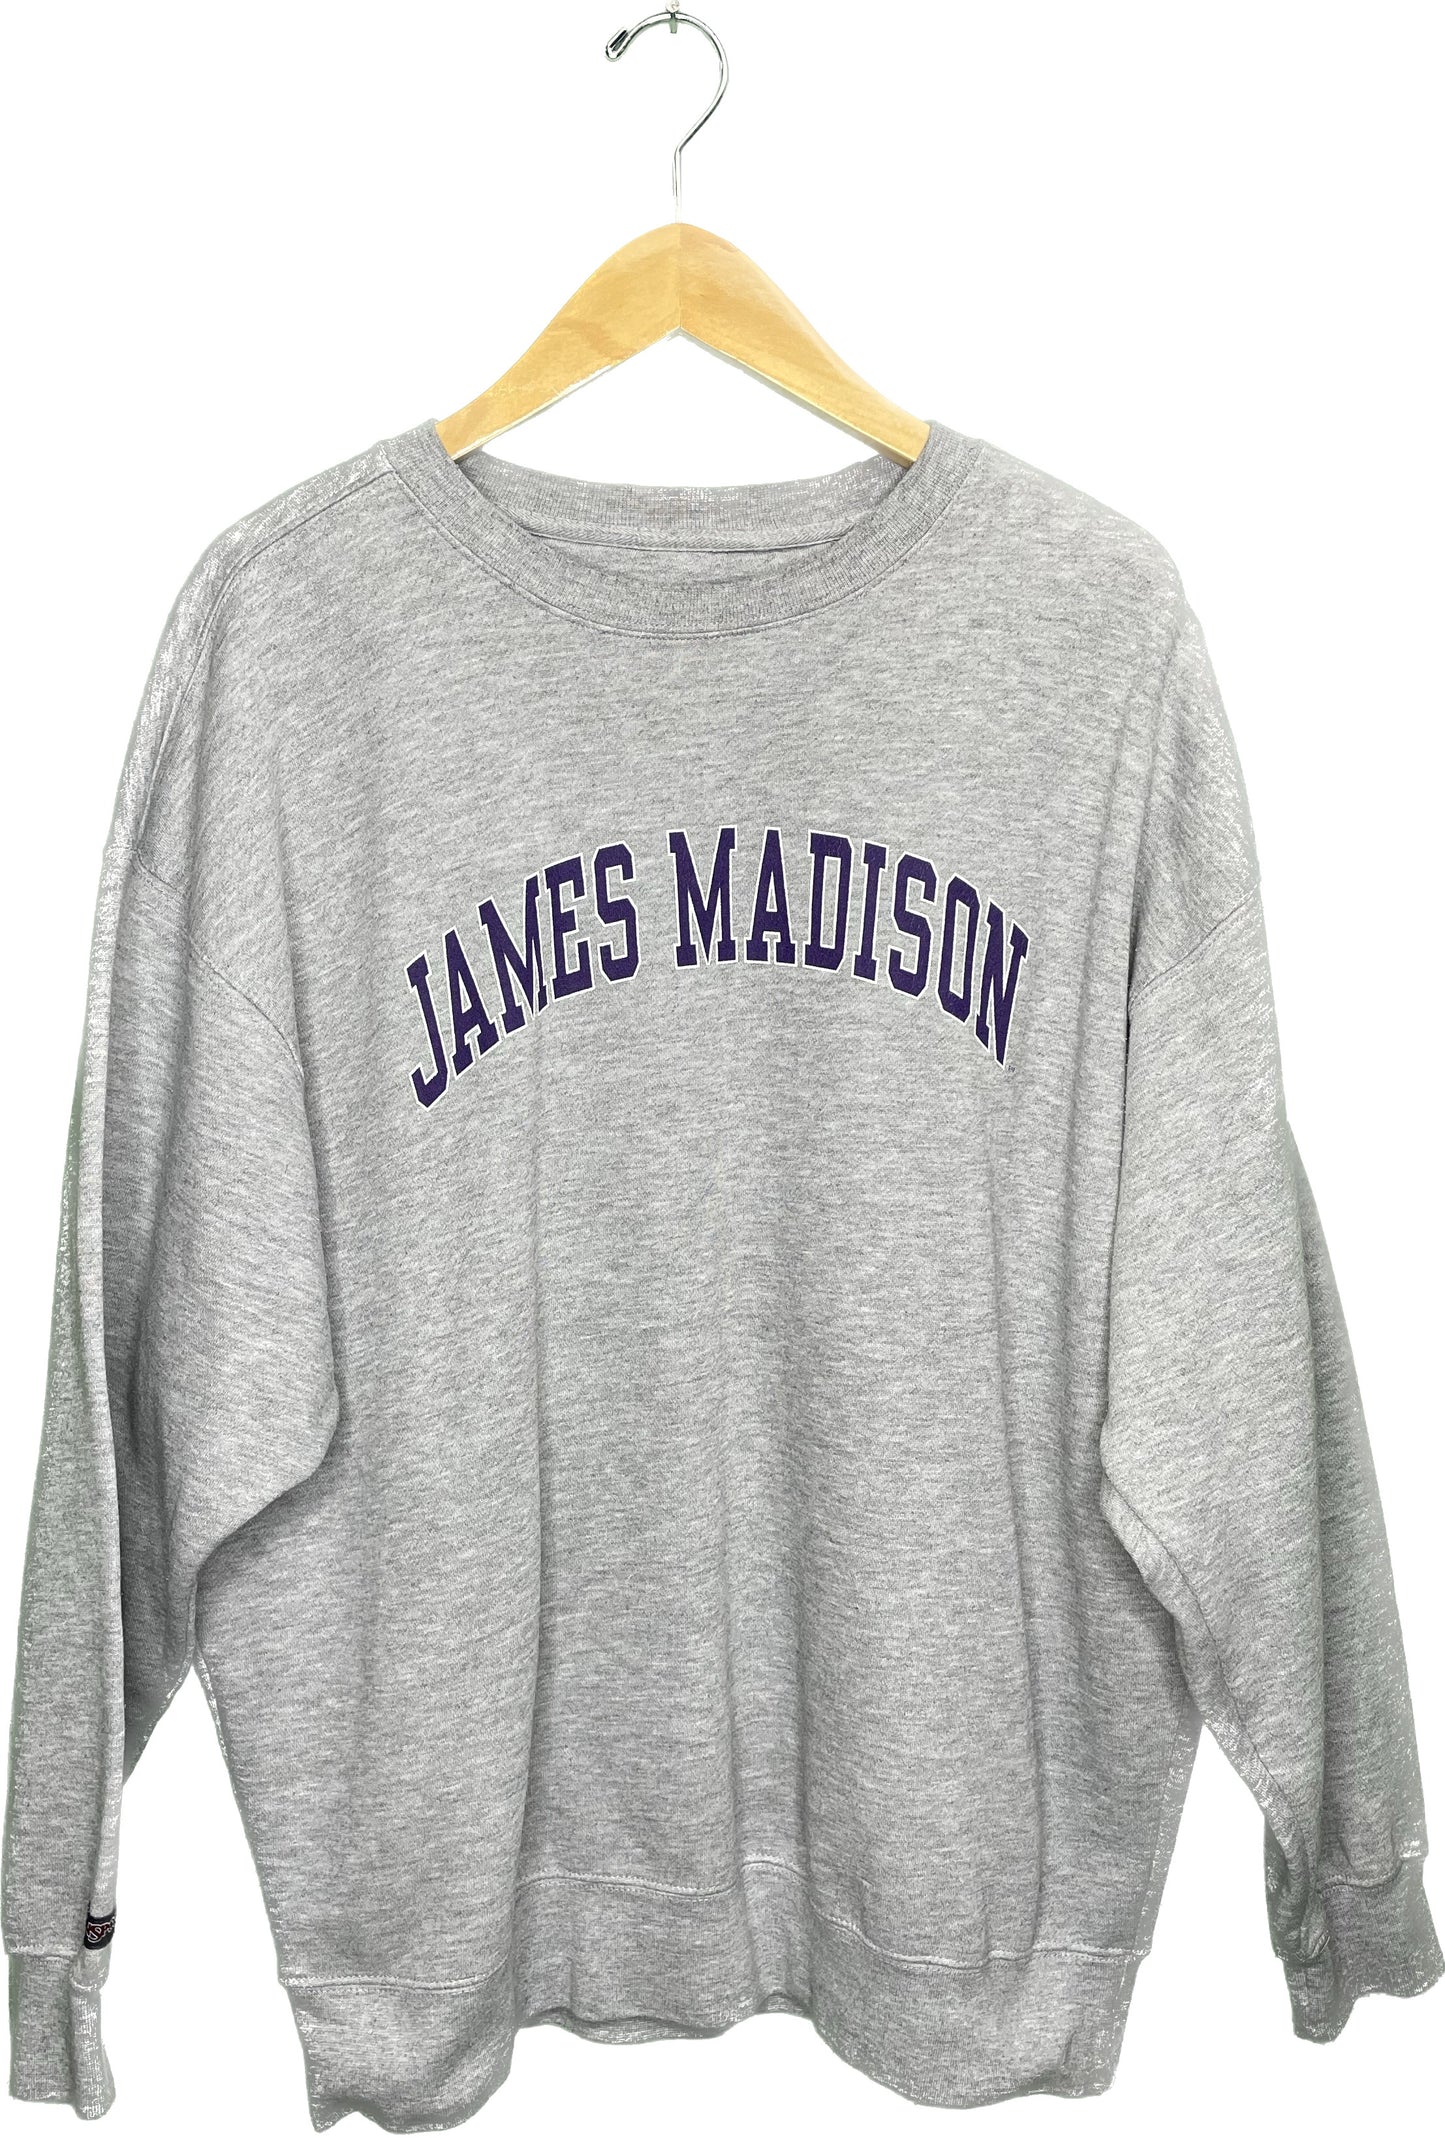 Vintage 2XL James Madison Crewneck Sweatshirt